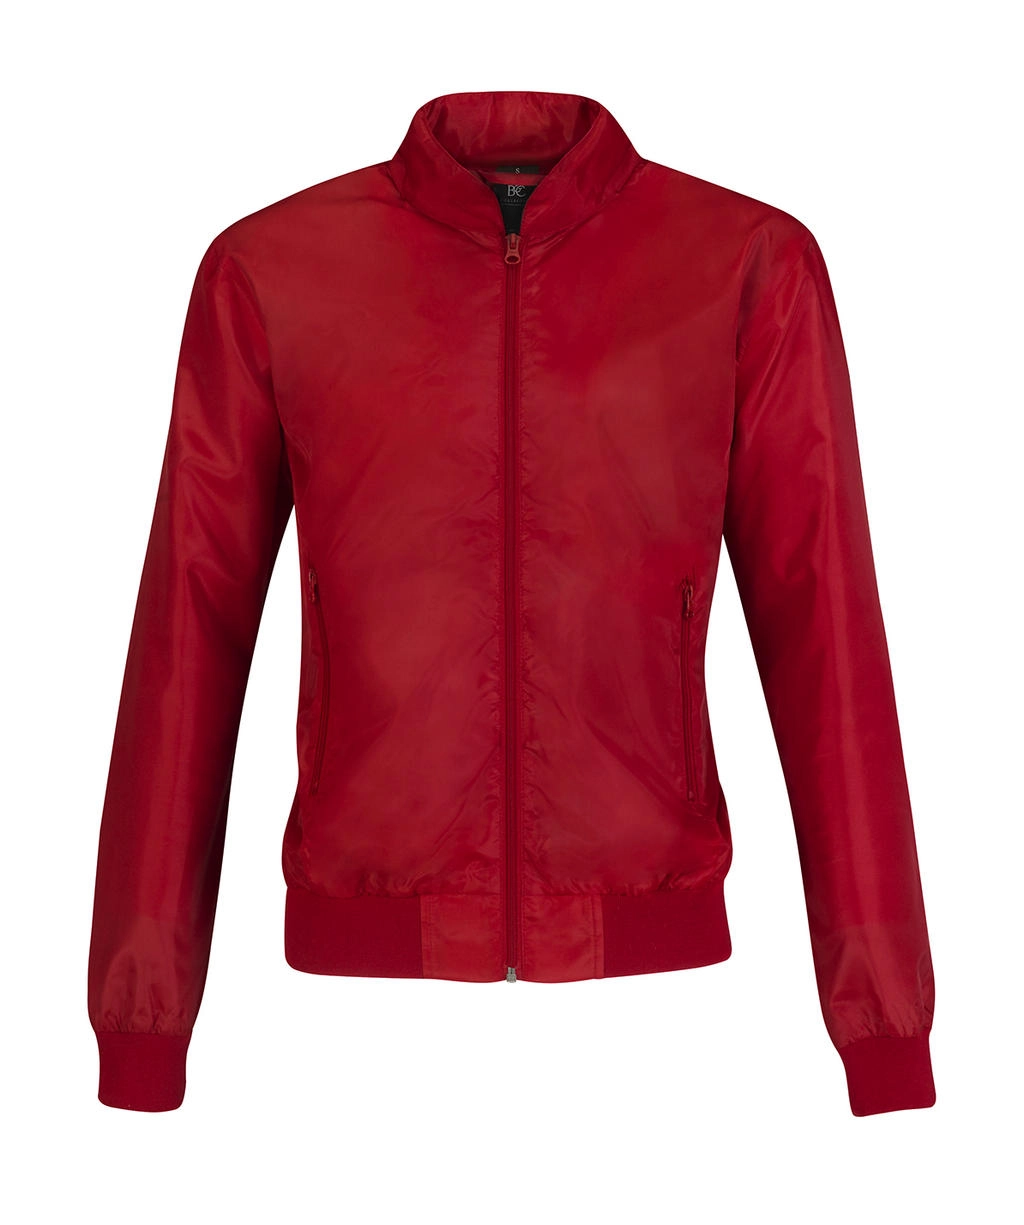 Trooper/women Jacket zum Besticken und Bedrucken in der Farbe Red/Warm Grey mit Ihren Logo, Schriftzug oder Motiv.